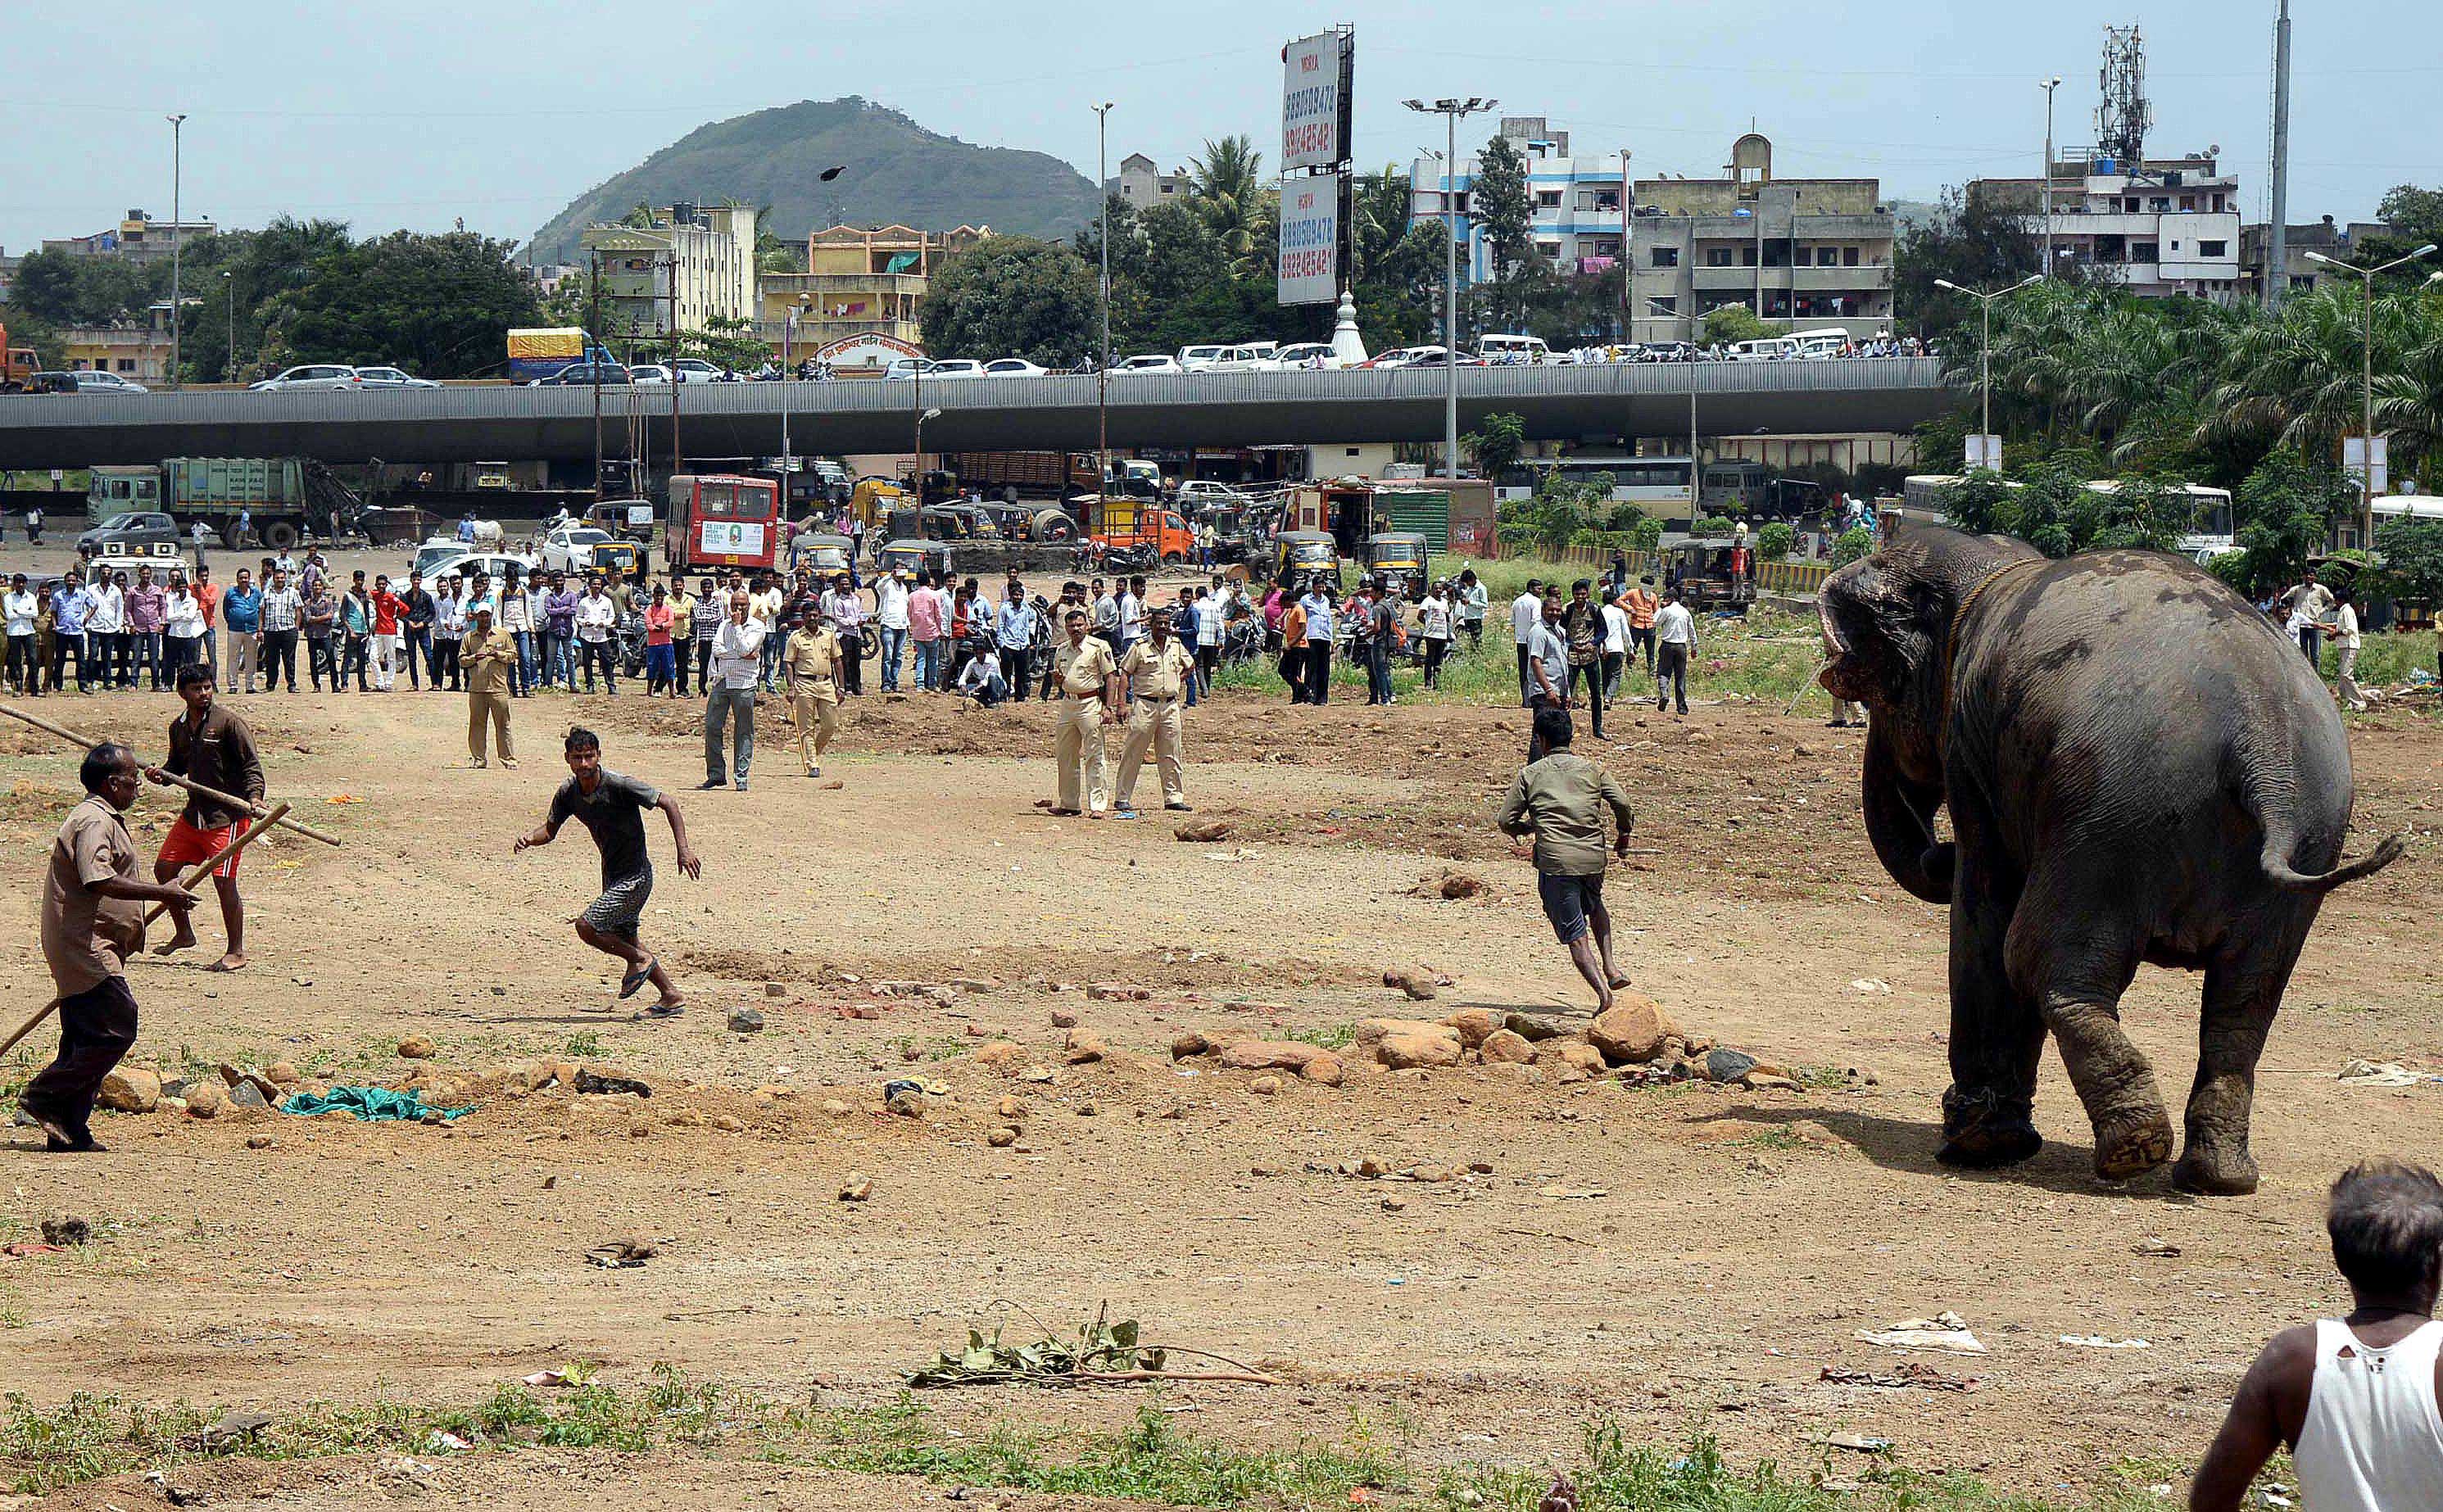 हत्ती उडय़ा मारू लागला आणि इकडे-तिकडे सुसाट पळू लागला. त्यामुळे नागरिकांमध्ये प्रचंड घबराट पसरली. (छाया - राजेश स्टिफन)